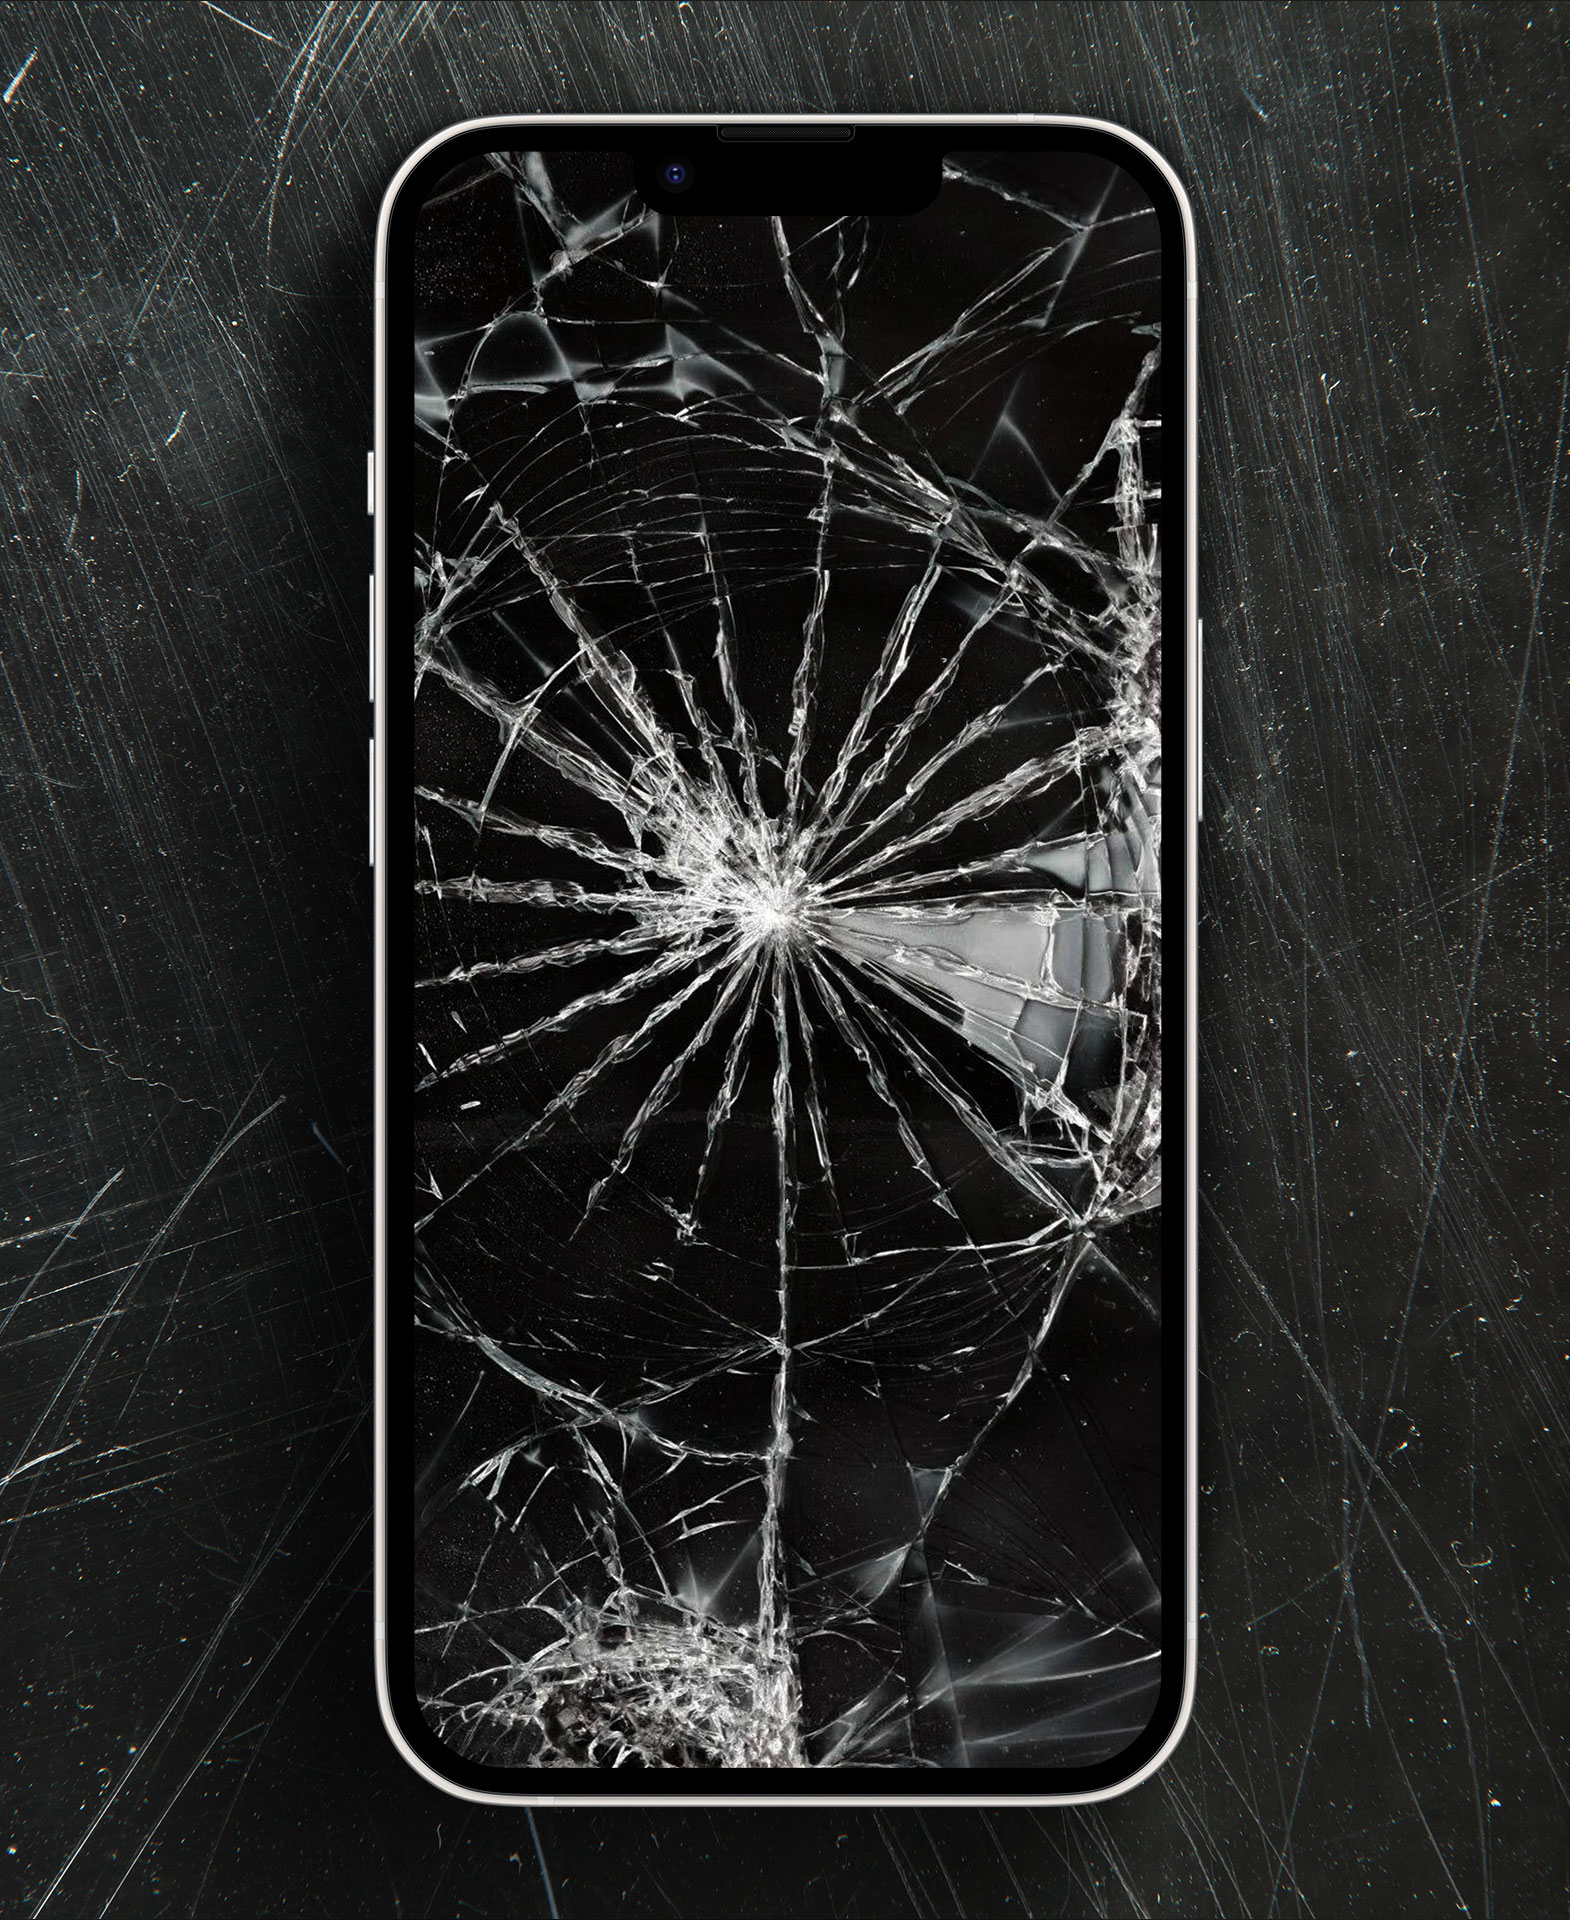 10 Best Broken Screen Wallpapers for iPhone - Guiding Tech